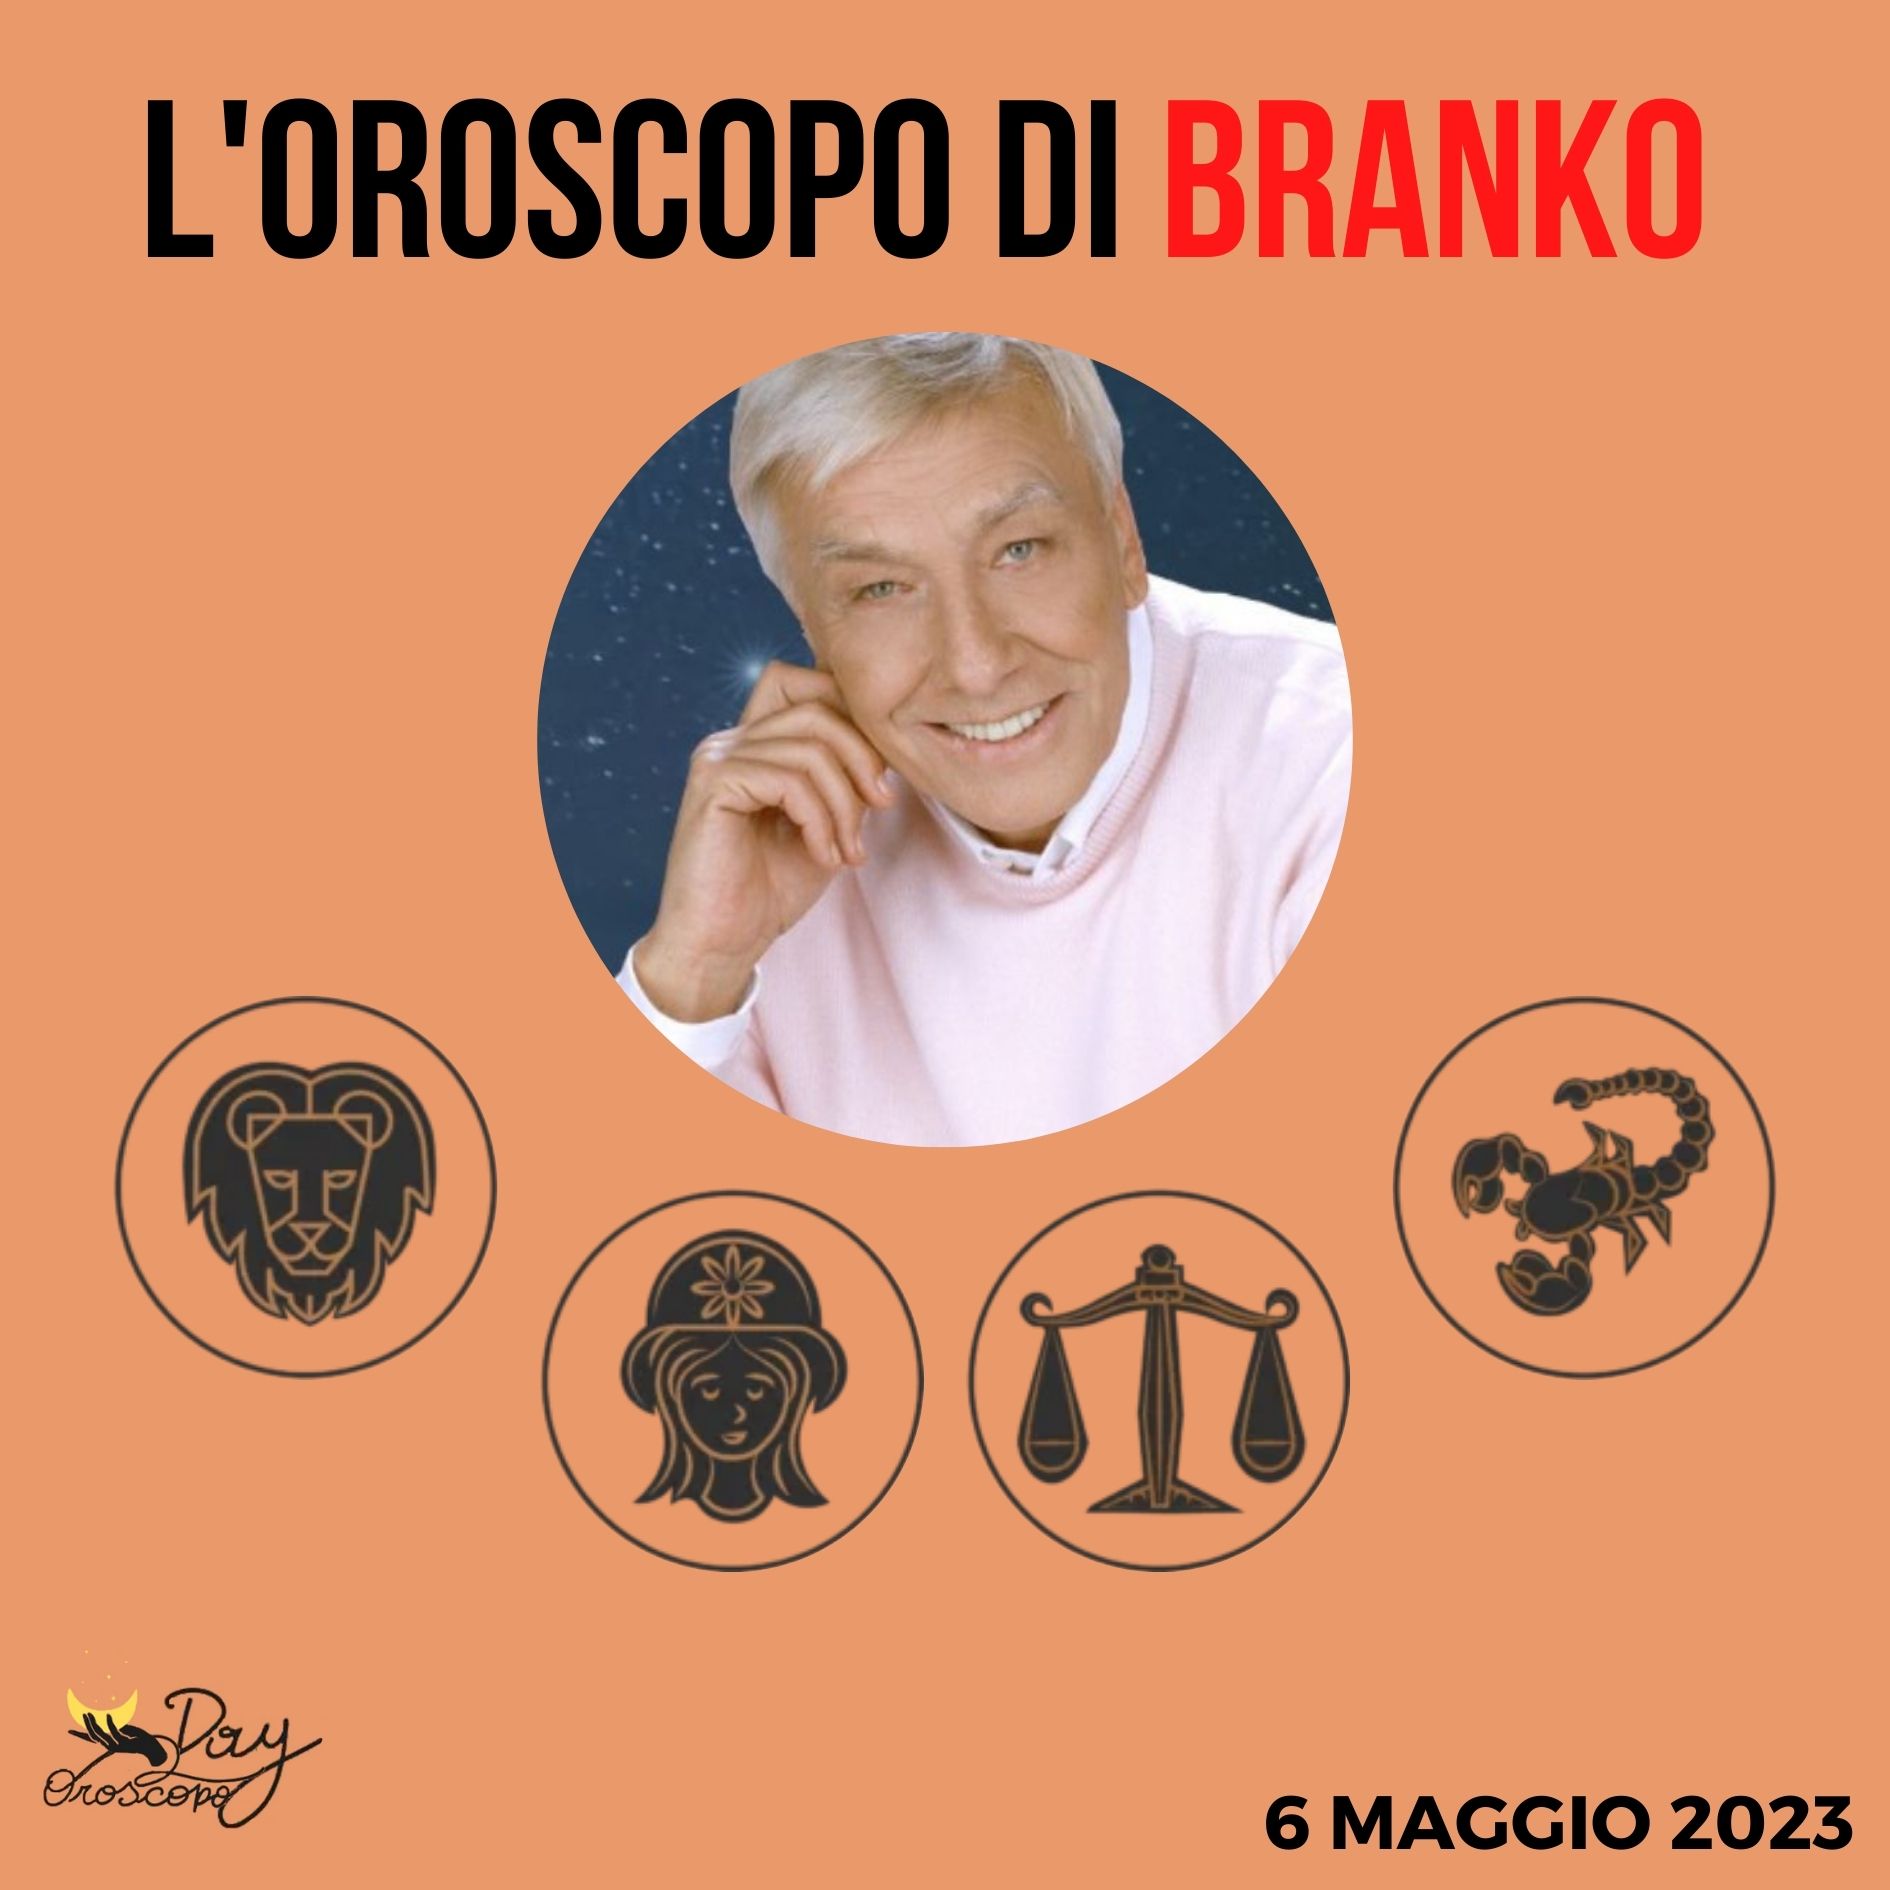 Oroscopo oggi domani Branko 6 maggio Leone Vergine Bilancia Scorpione